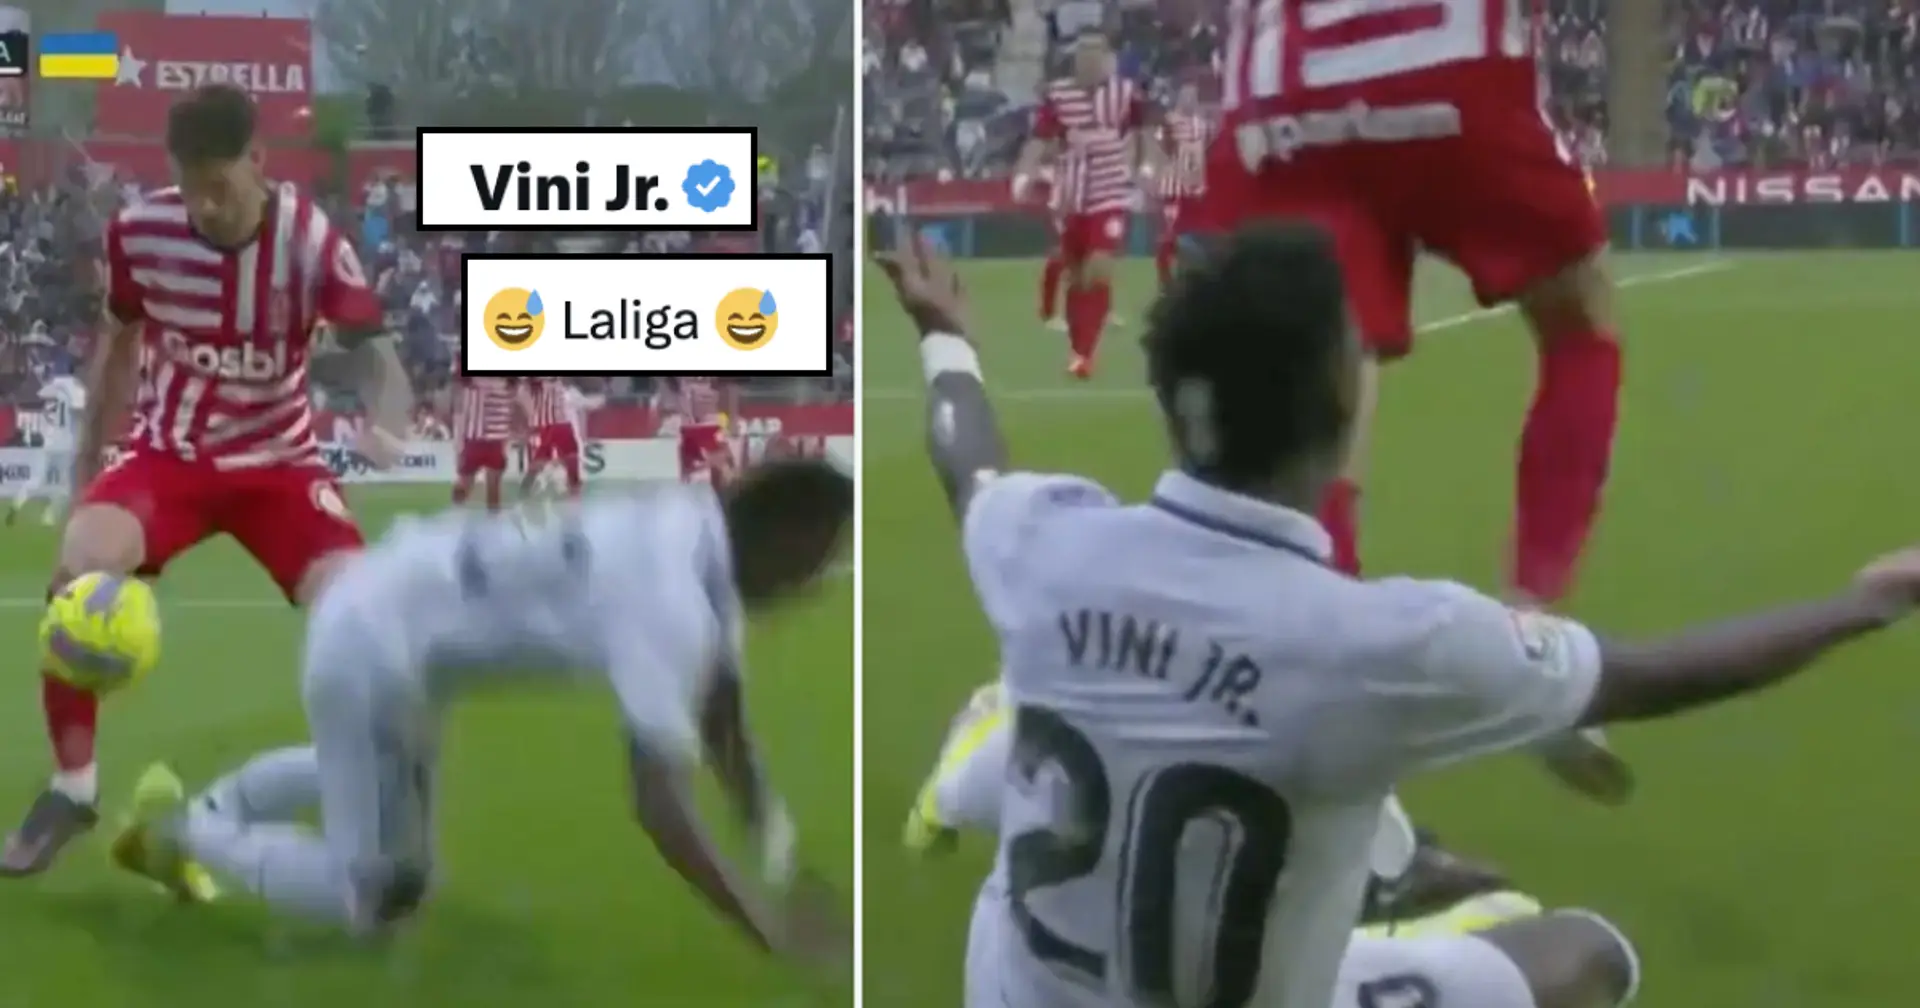 "😅La Liga😅": Vinicius macht sich über die Entscheidung des Schiedsrichters lustig, ihm im Spiel gegen Girona eine gelbe Karte zu zeigen 